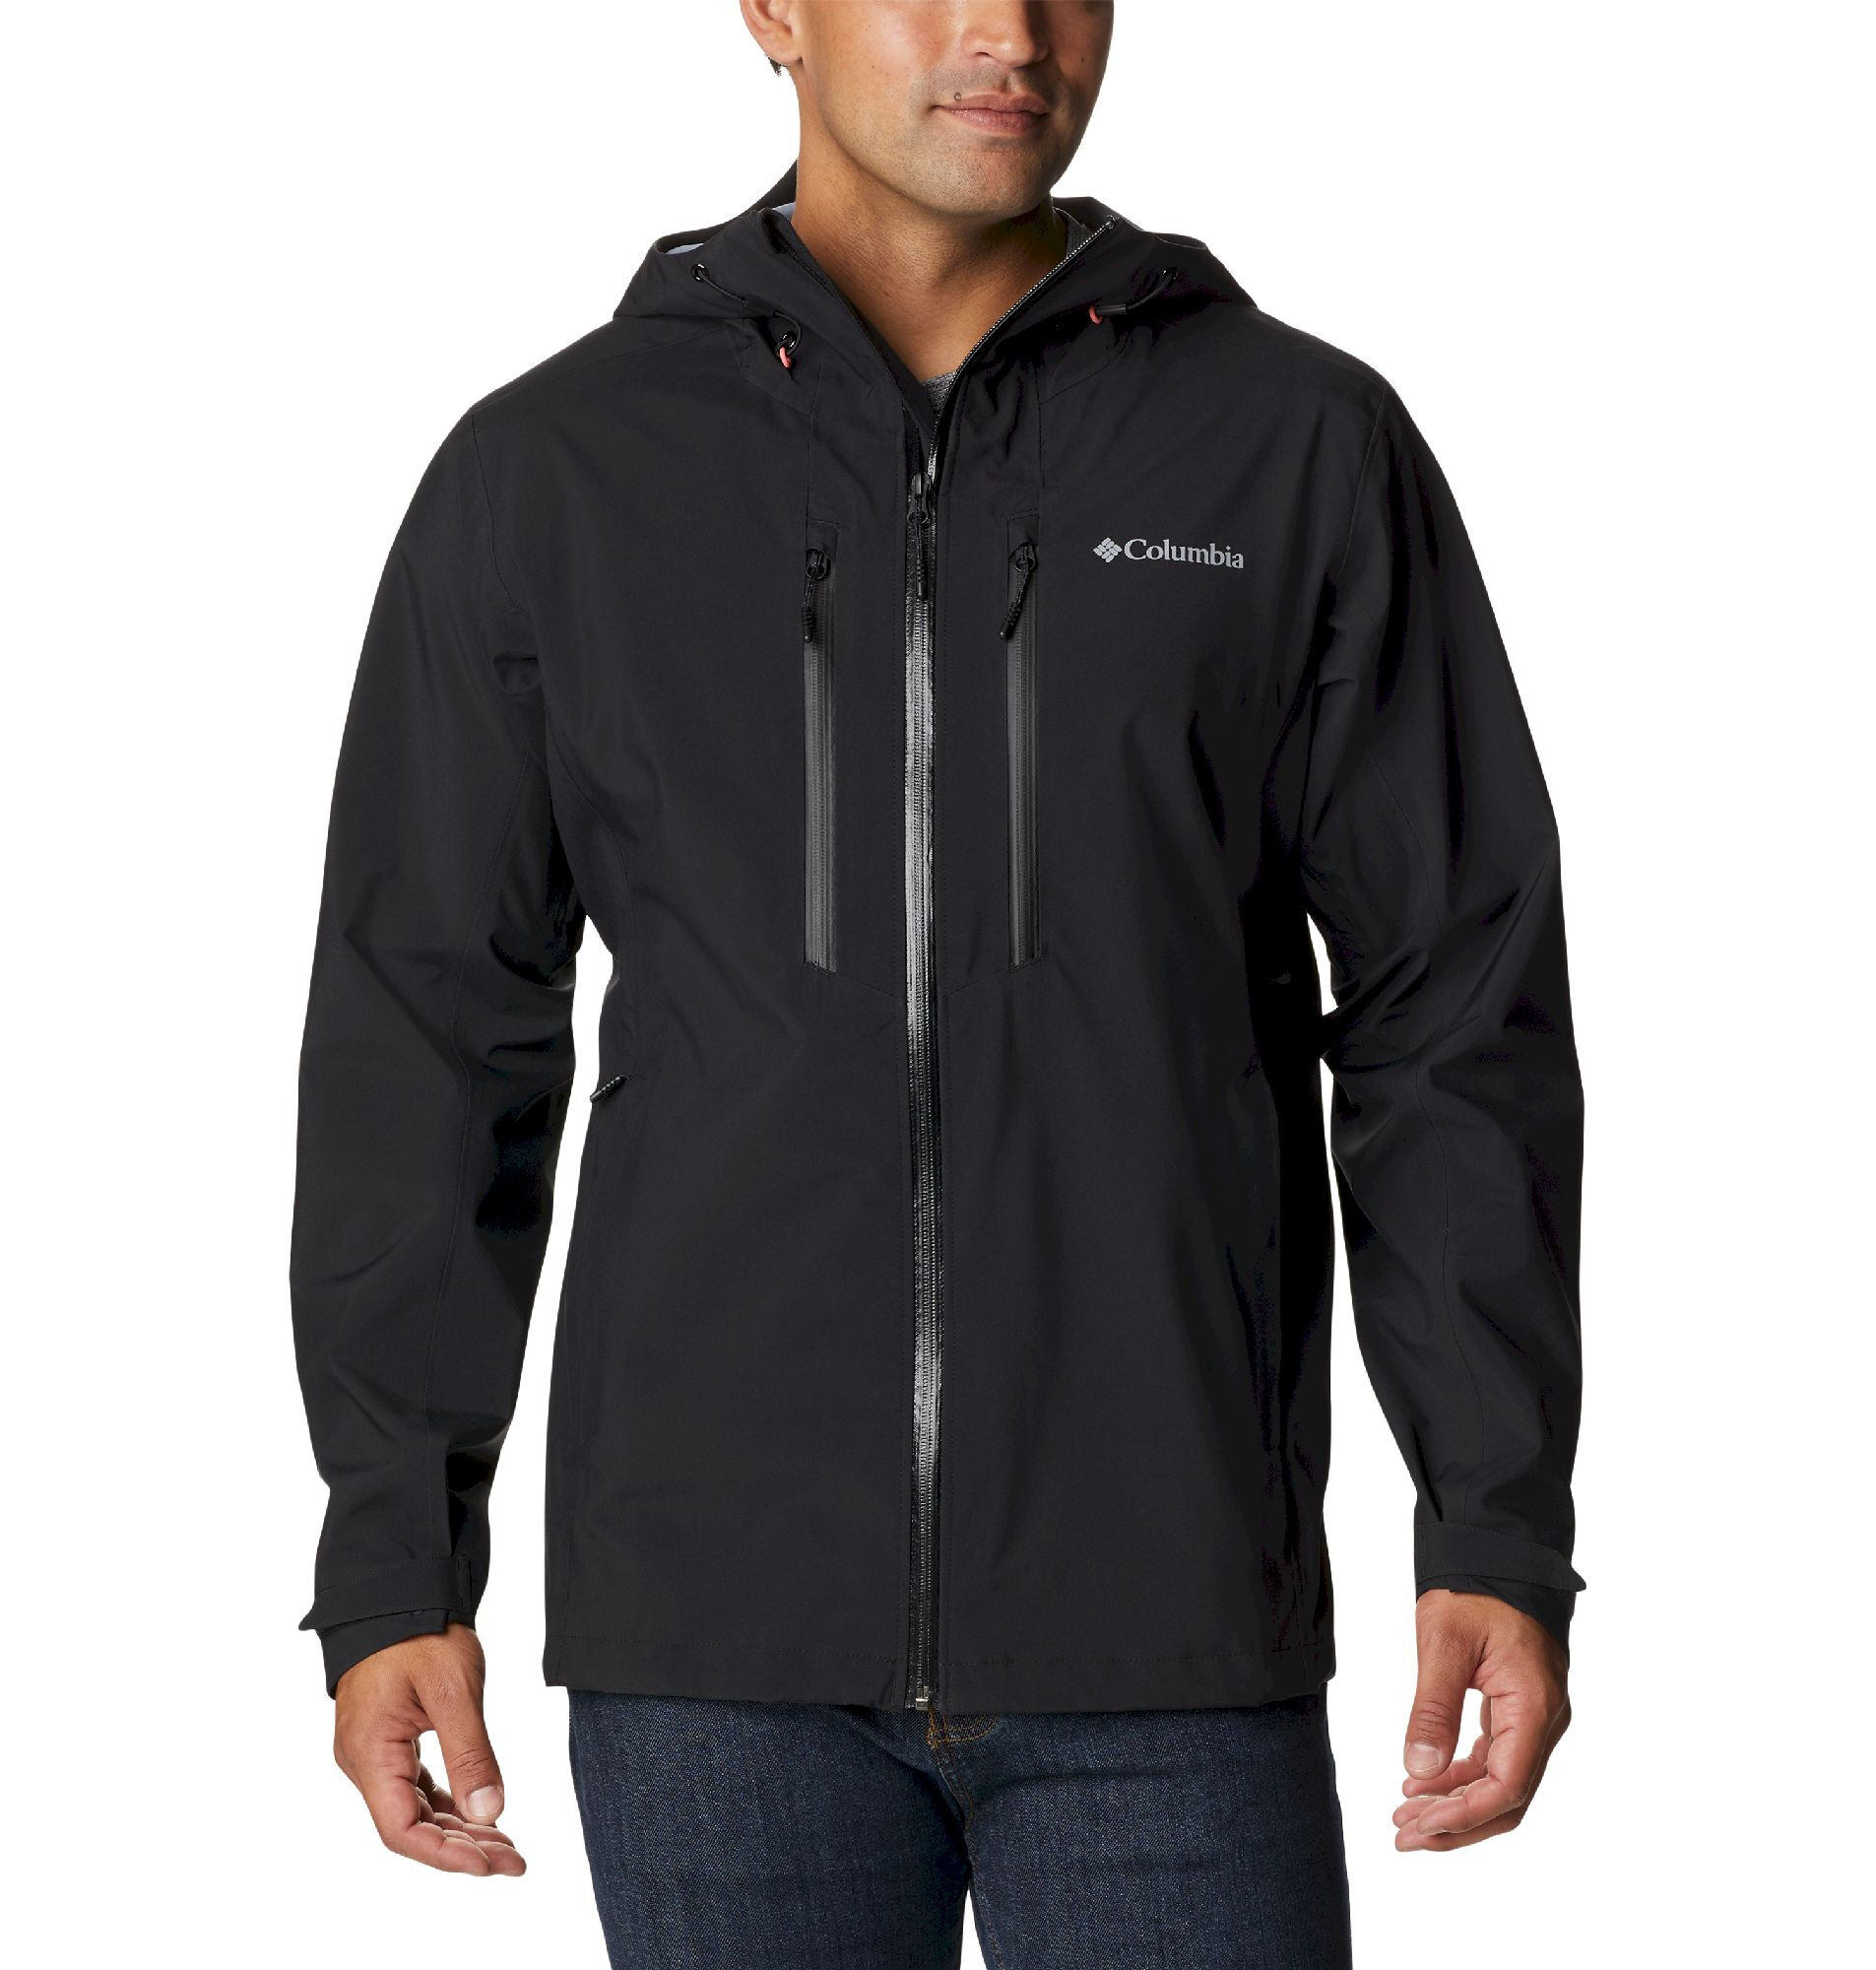 Columbia Peak Creek - Waterproof jacket - Men's